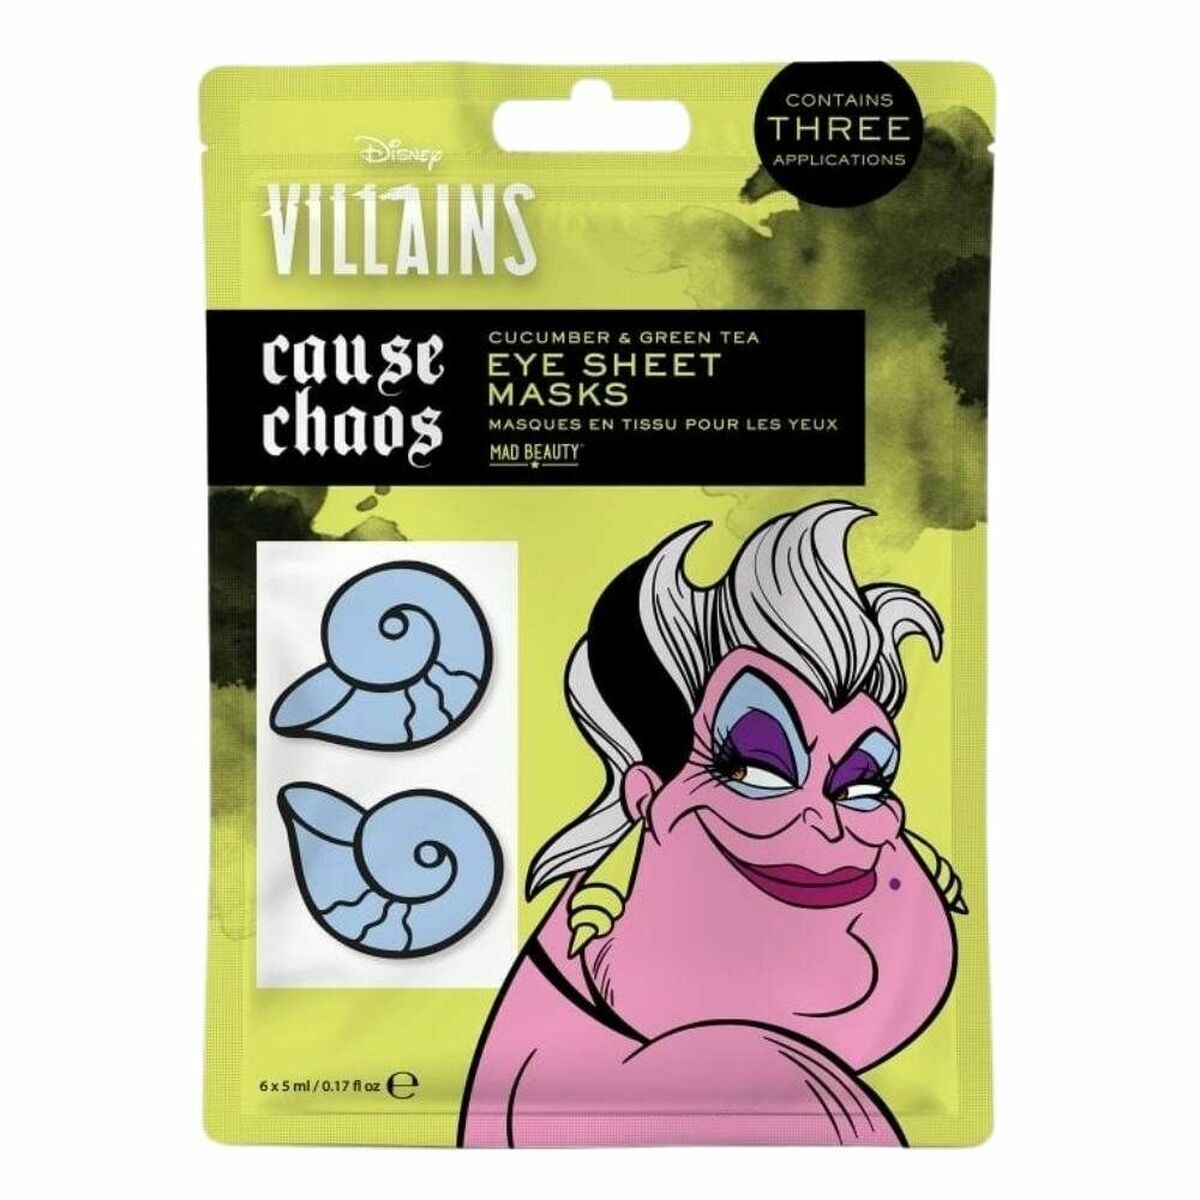 Mască pentru Zona din Jurul Ochilor Mad Beauty Disney Villains Ursula (6 x 5 ml)